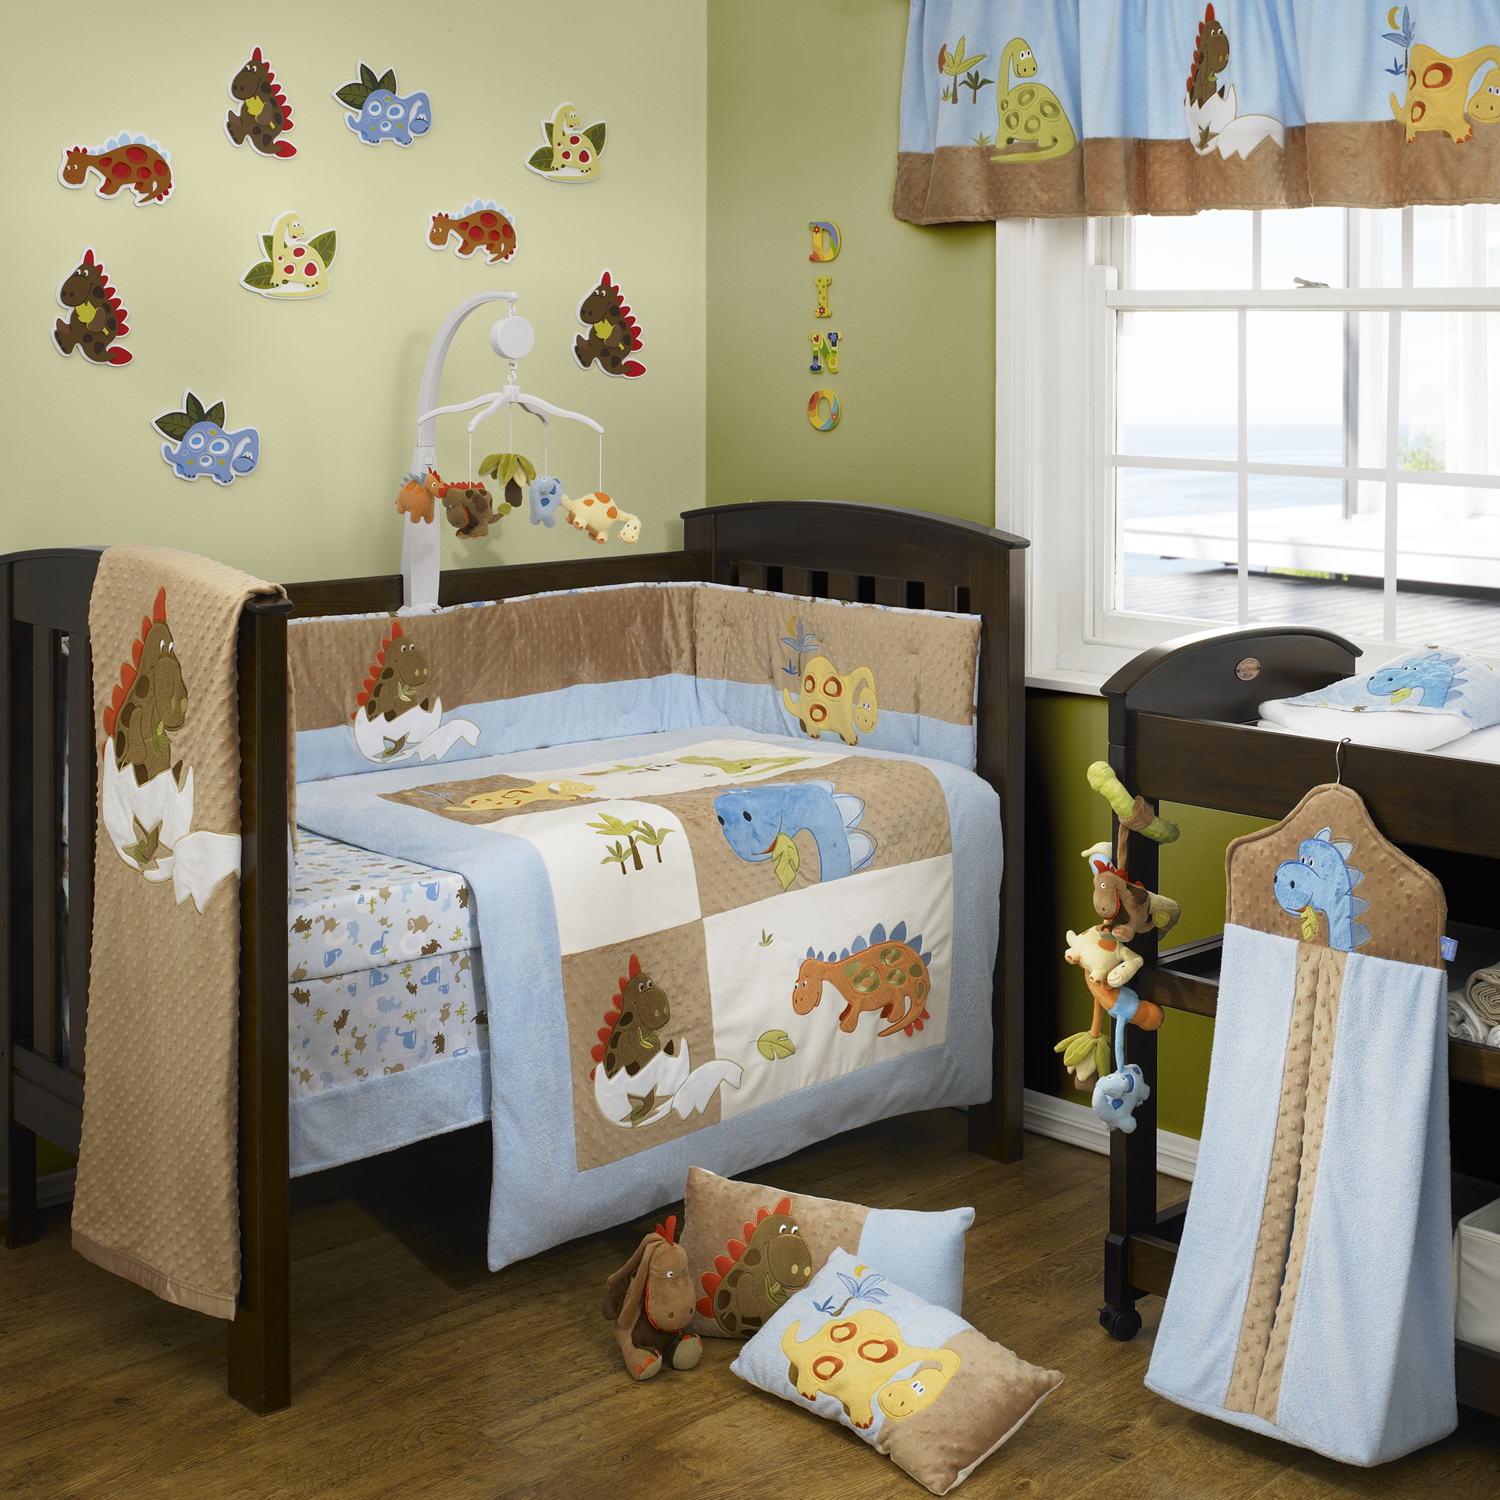 kids room wallpaper,product,bed,furniture,room,infant bed